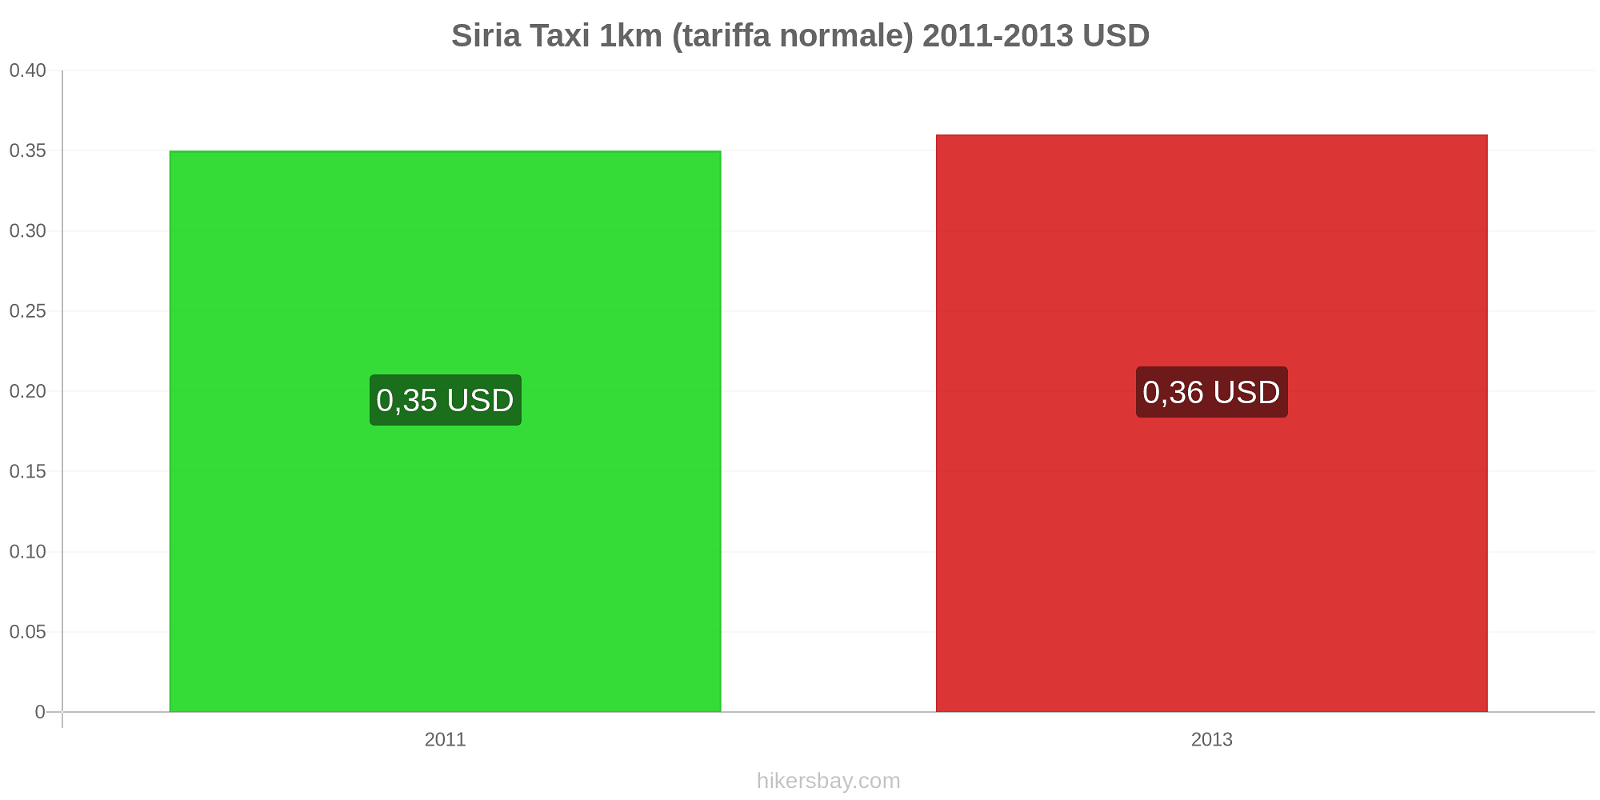 Siria cambi di prezzo Taxi 1km (tariffa normale) hikersbay.com